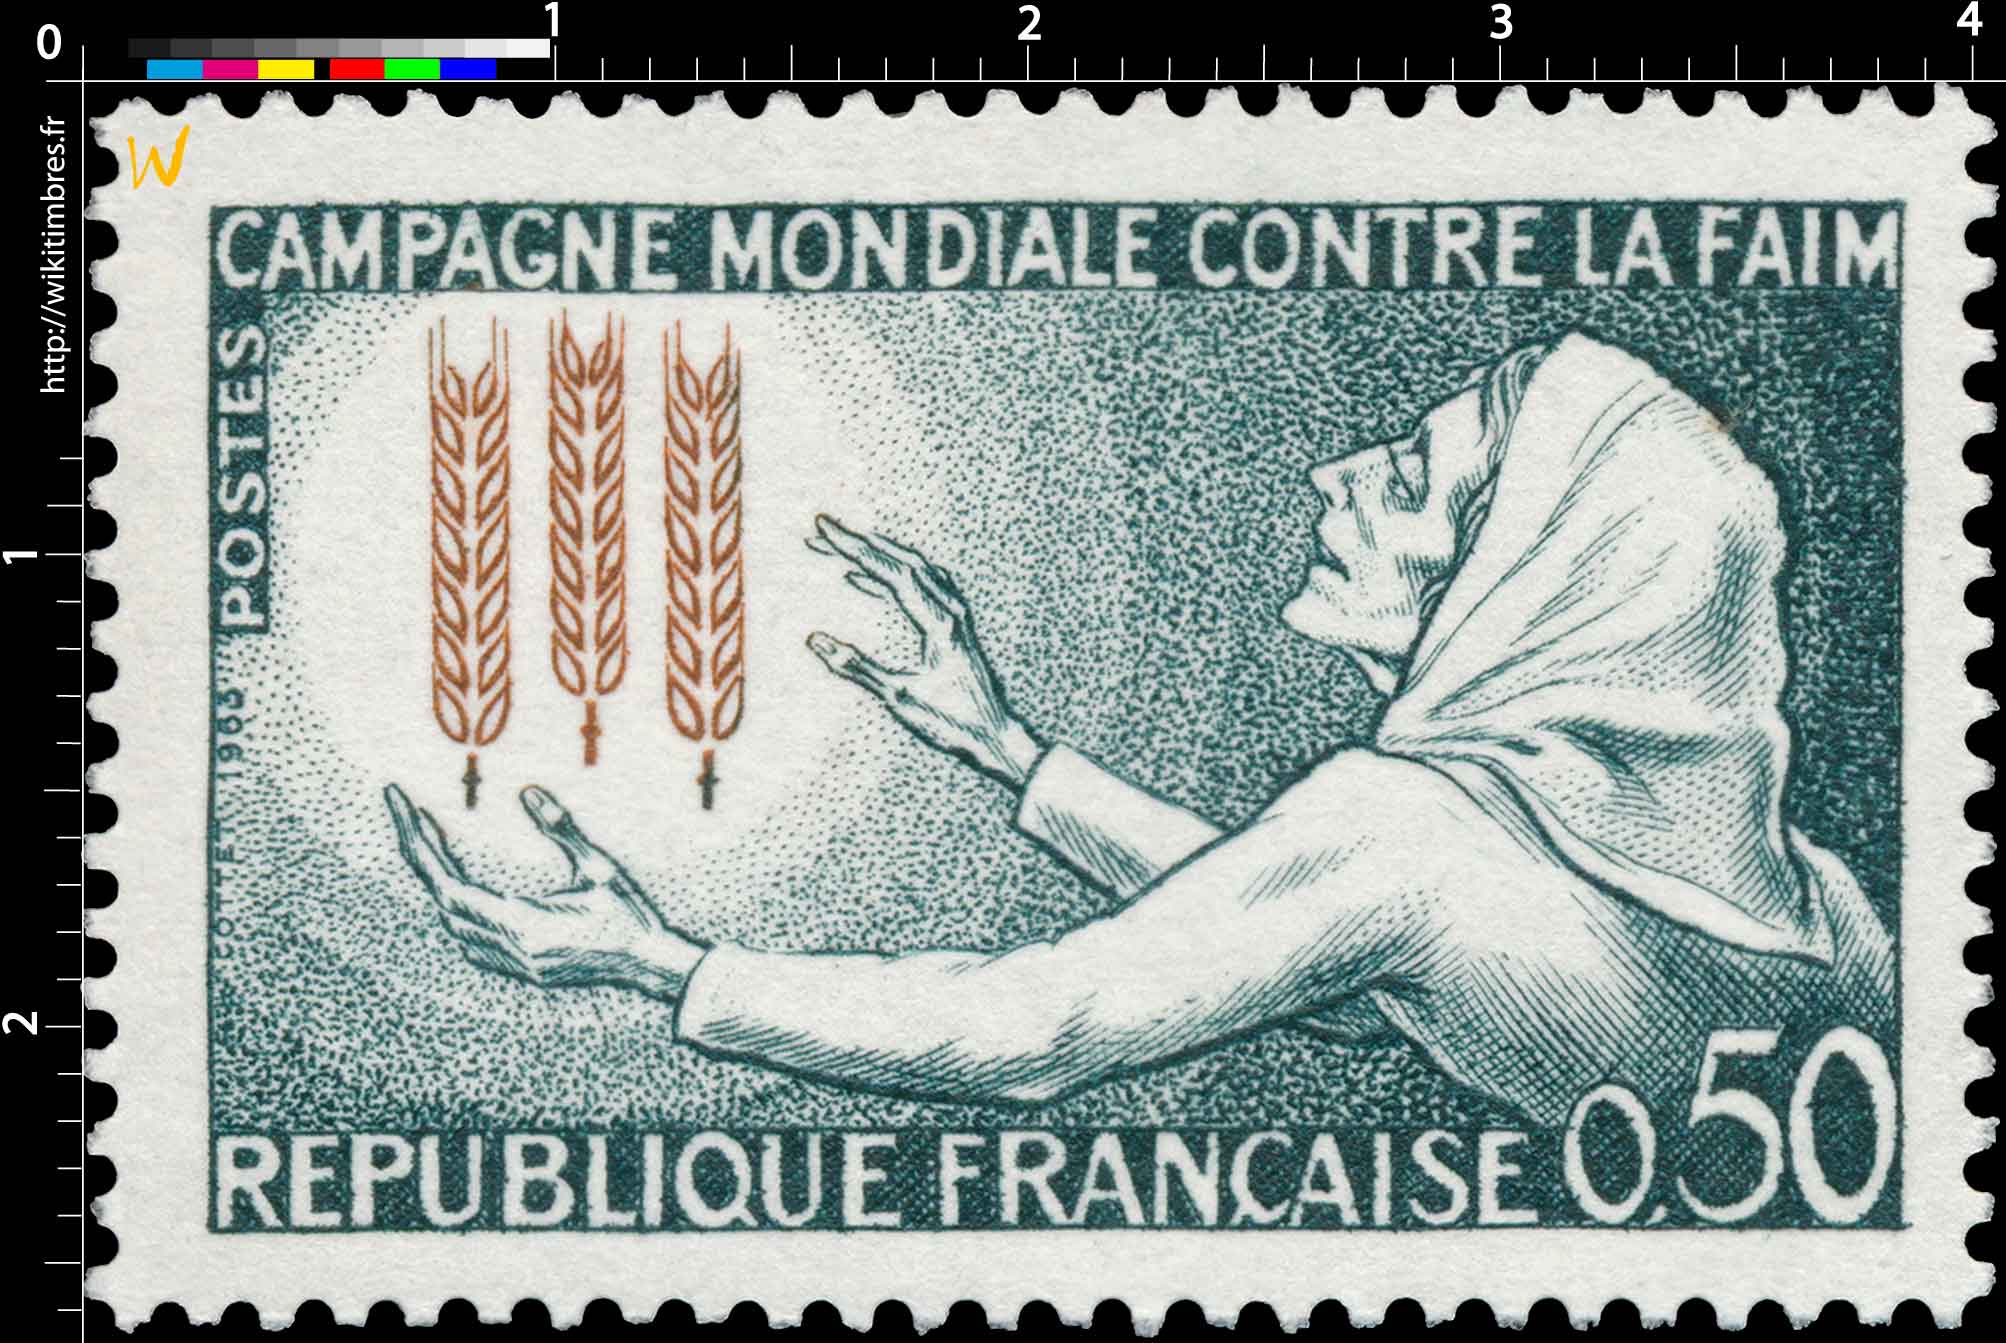 1963 CAMPAGNE MONDIALE CONTRE LA FAIM